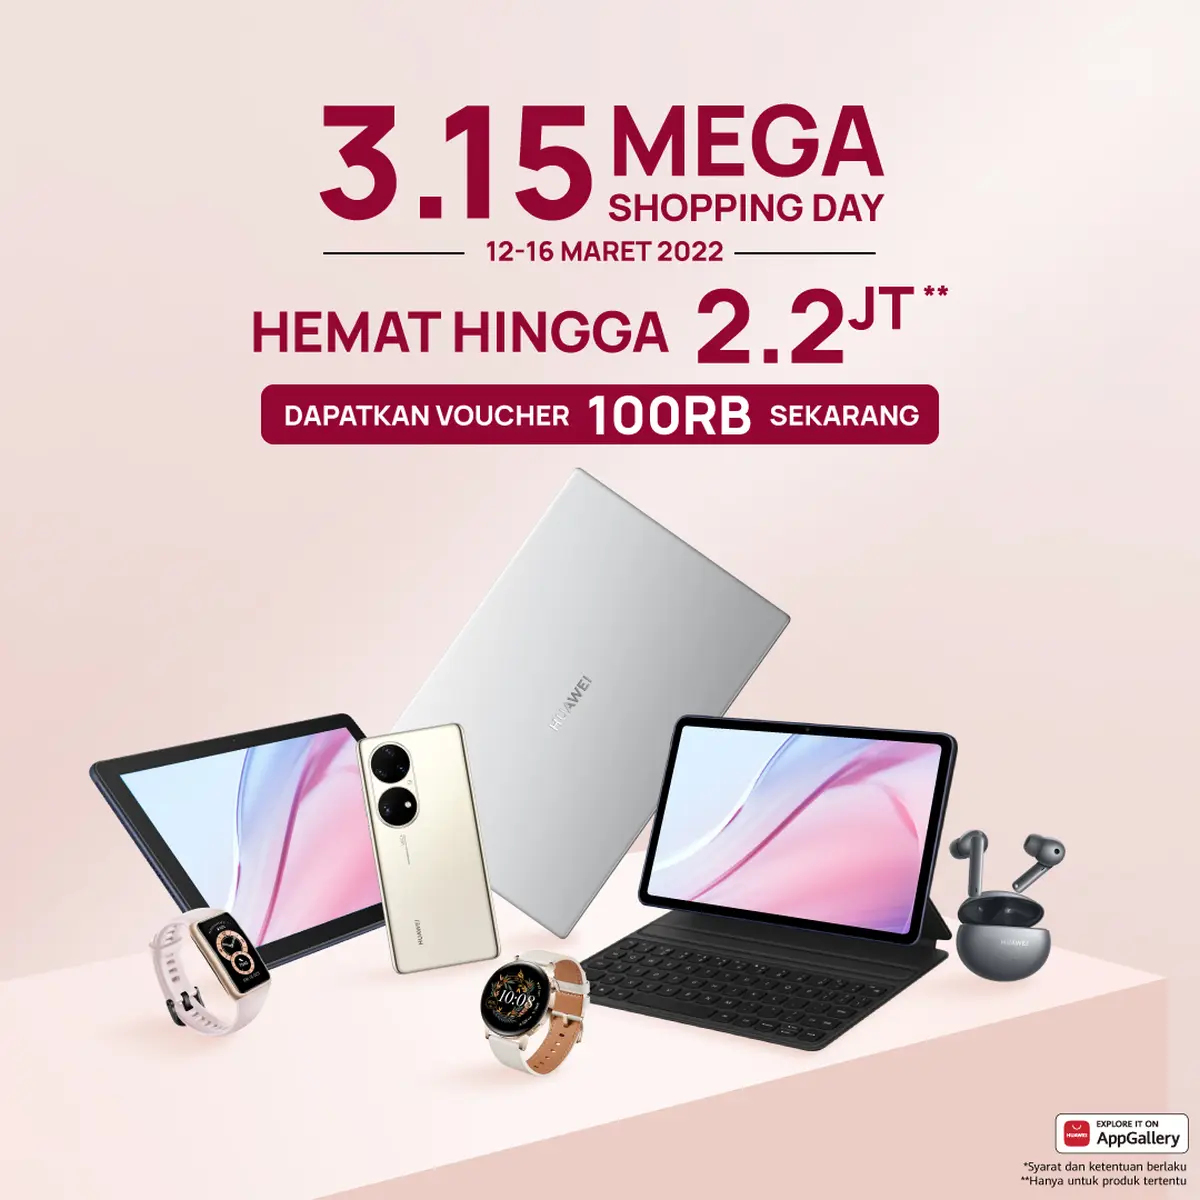 1 Huawei 3.15 MEGA Shopping Day